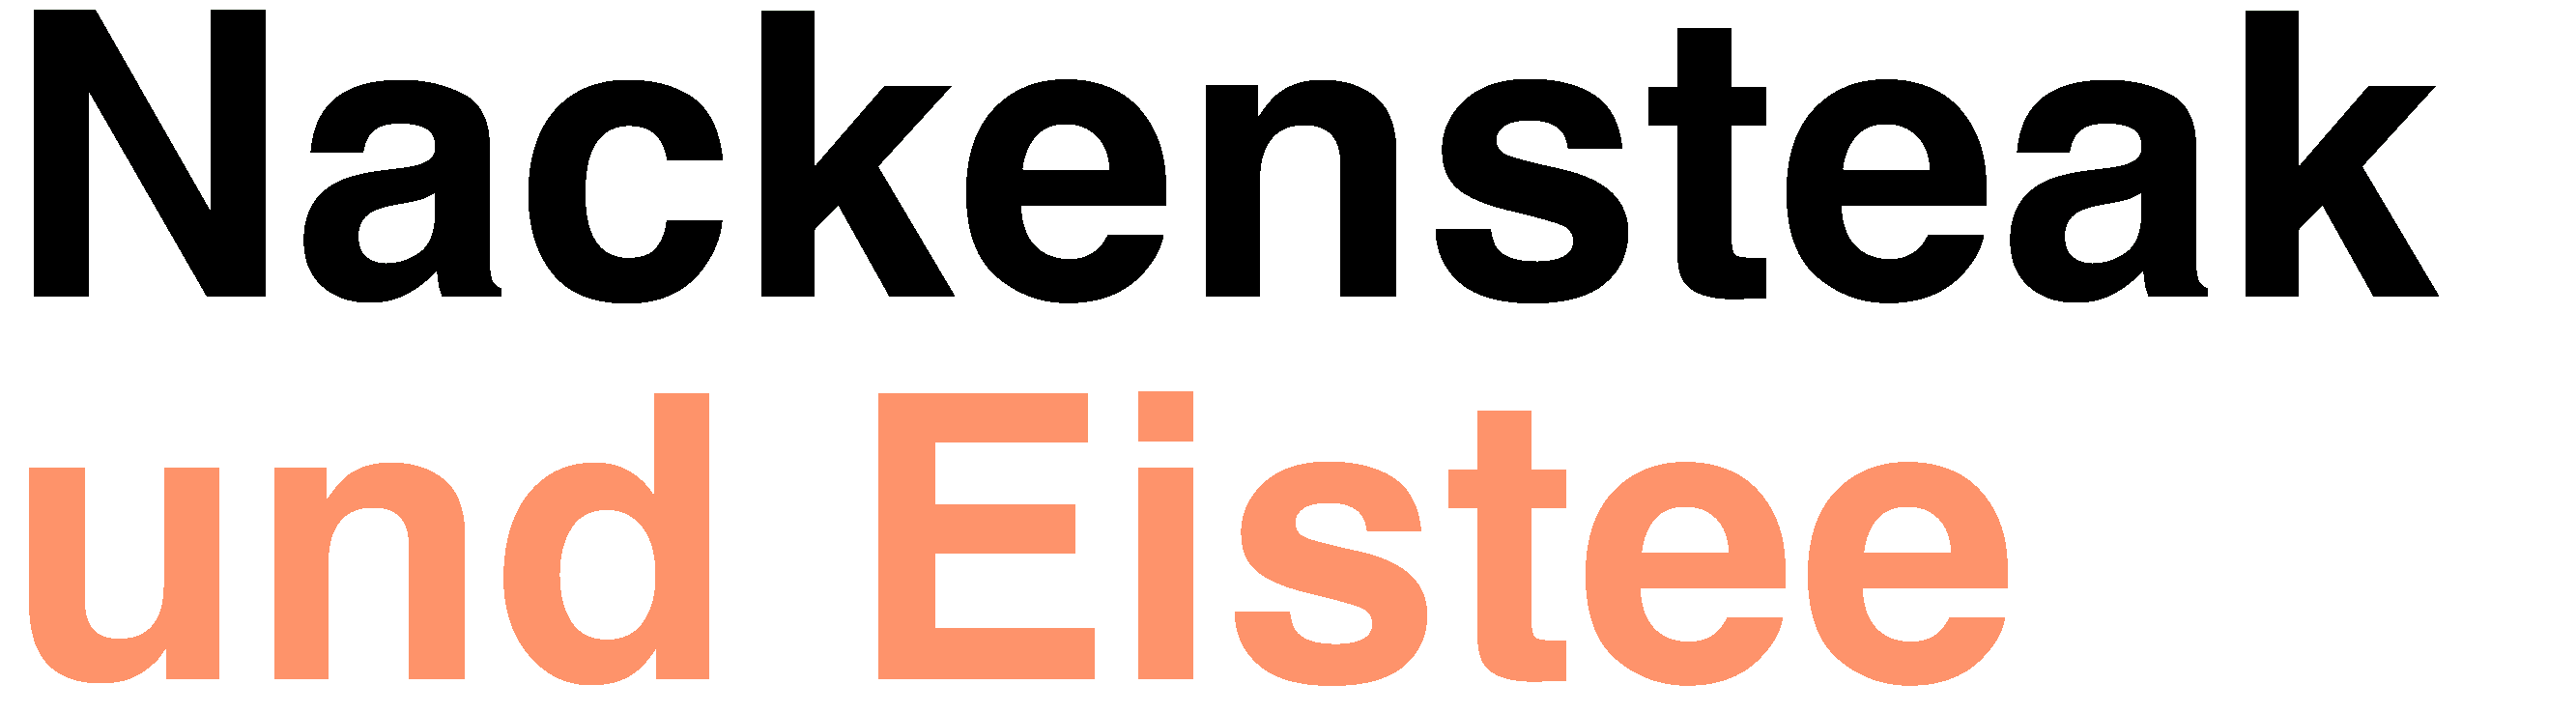 Nackensteak und Eistee Logo